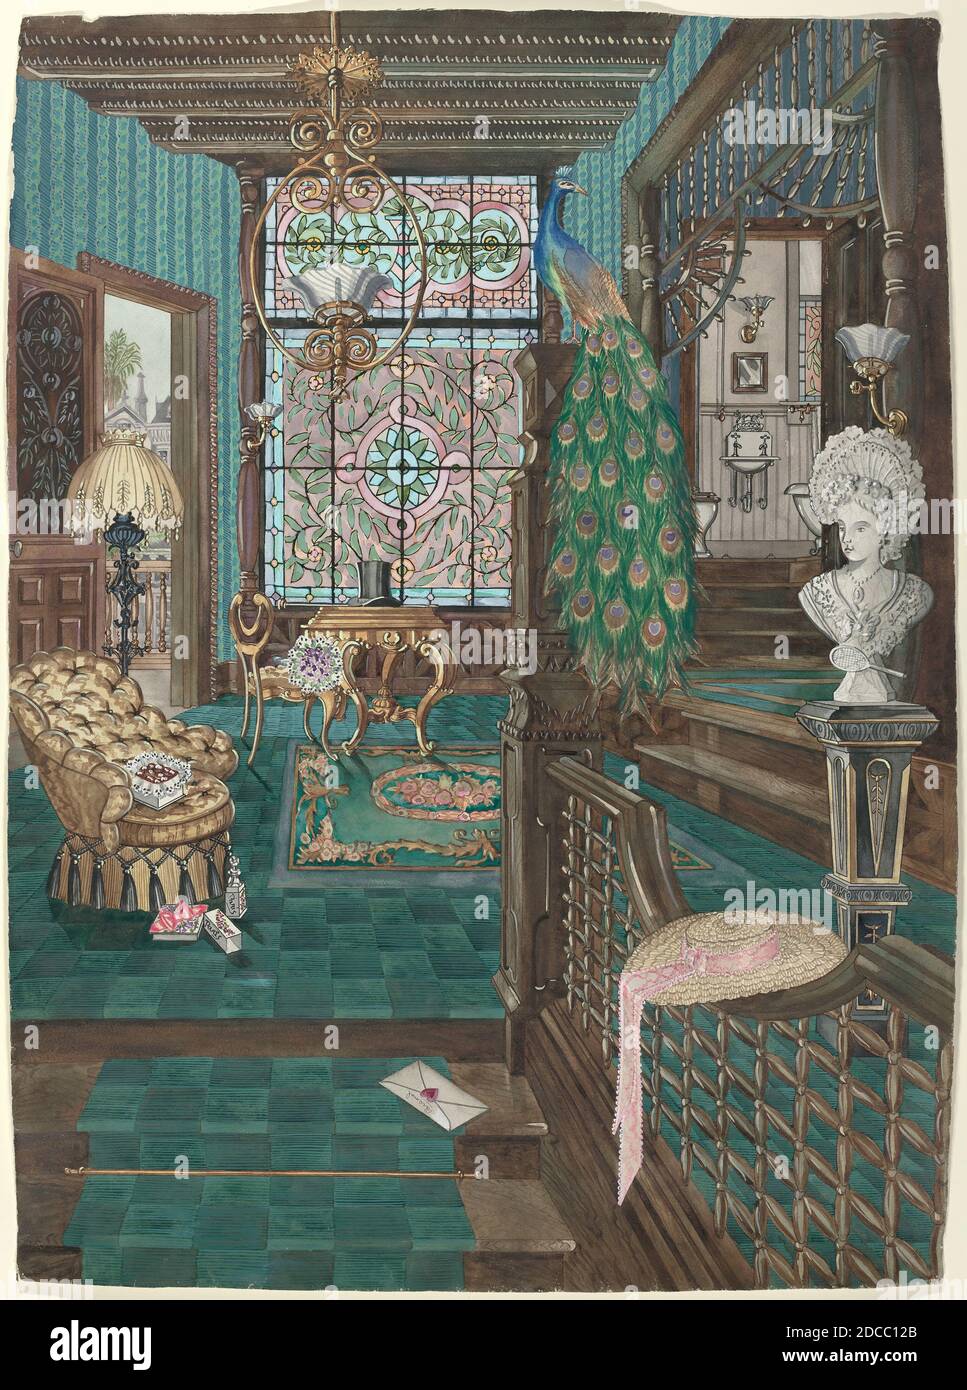 Perkins Harnly, (artista), americano, 1901 - 1986, secondo piano Stair Landing and Hall, 1935/1942, acquerello, gouache, e grafite su carta, totale: 78.3 x 57.3 cm (30 13/16 x 22 9/16 pollici Foto Stock